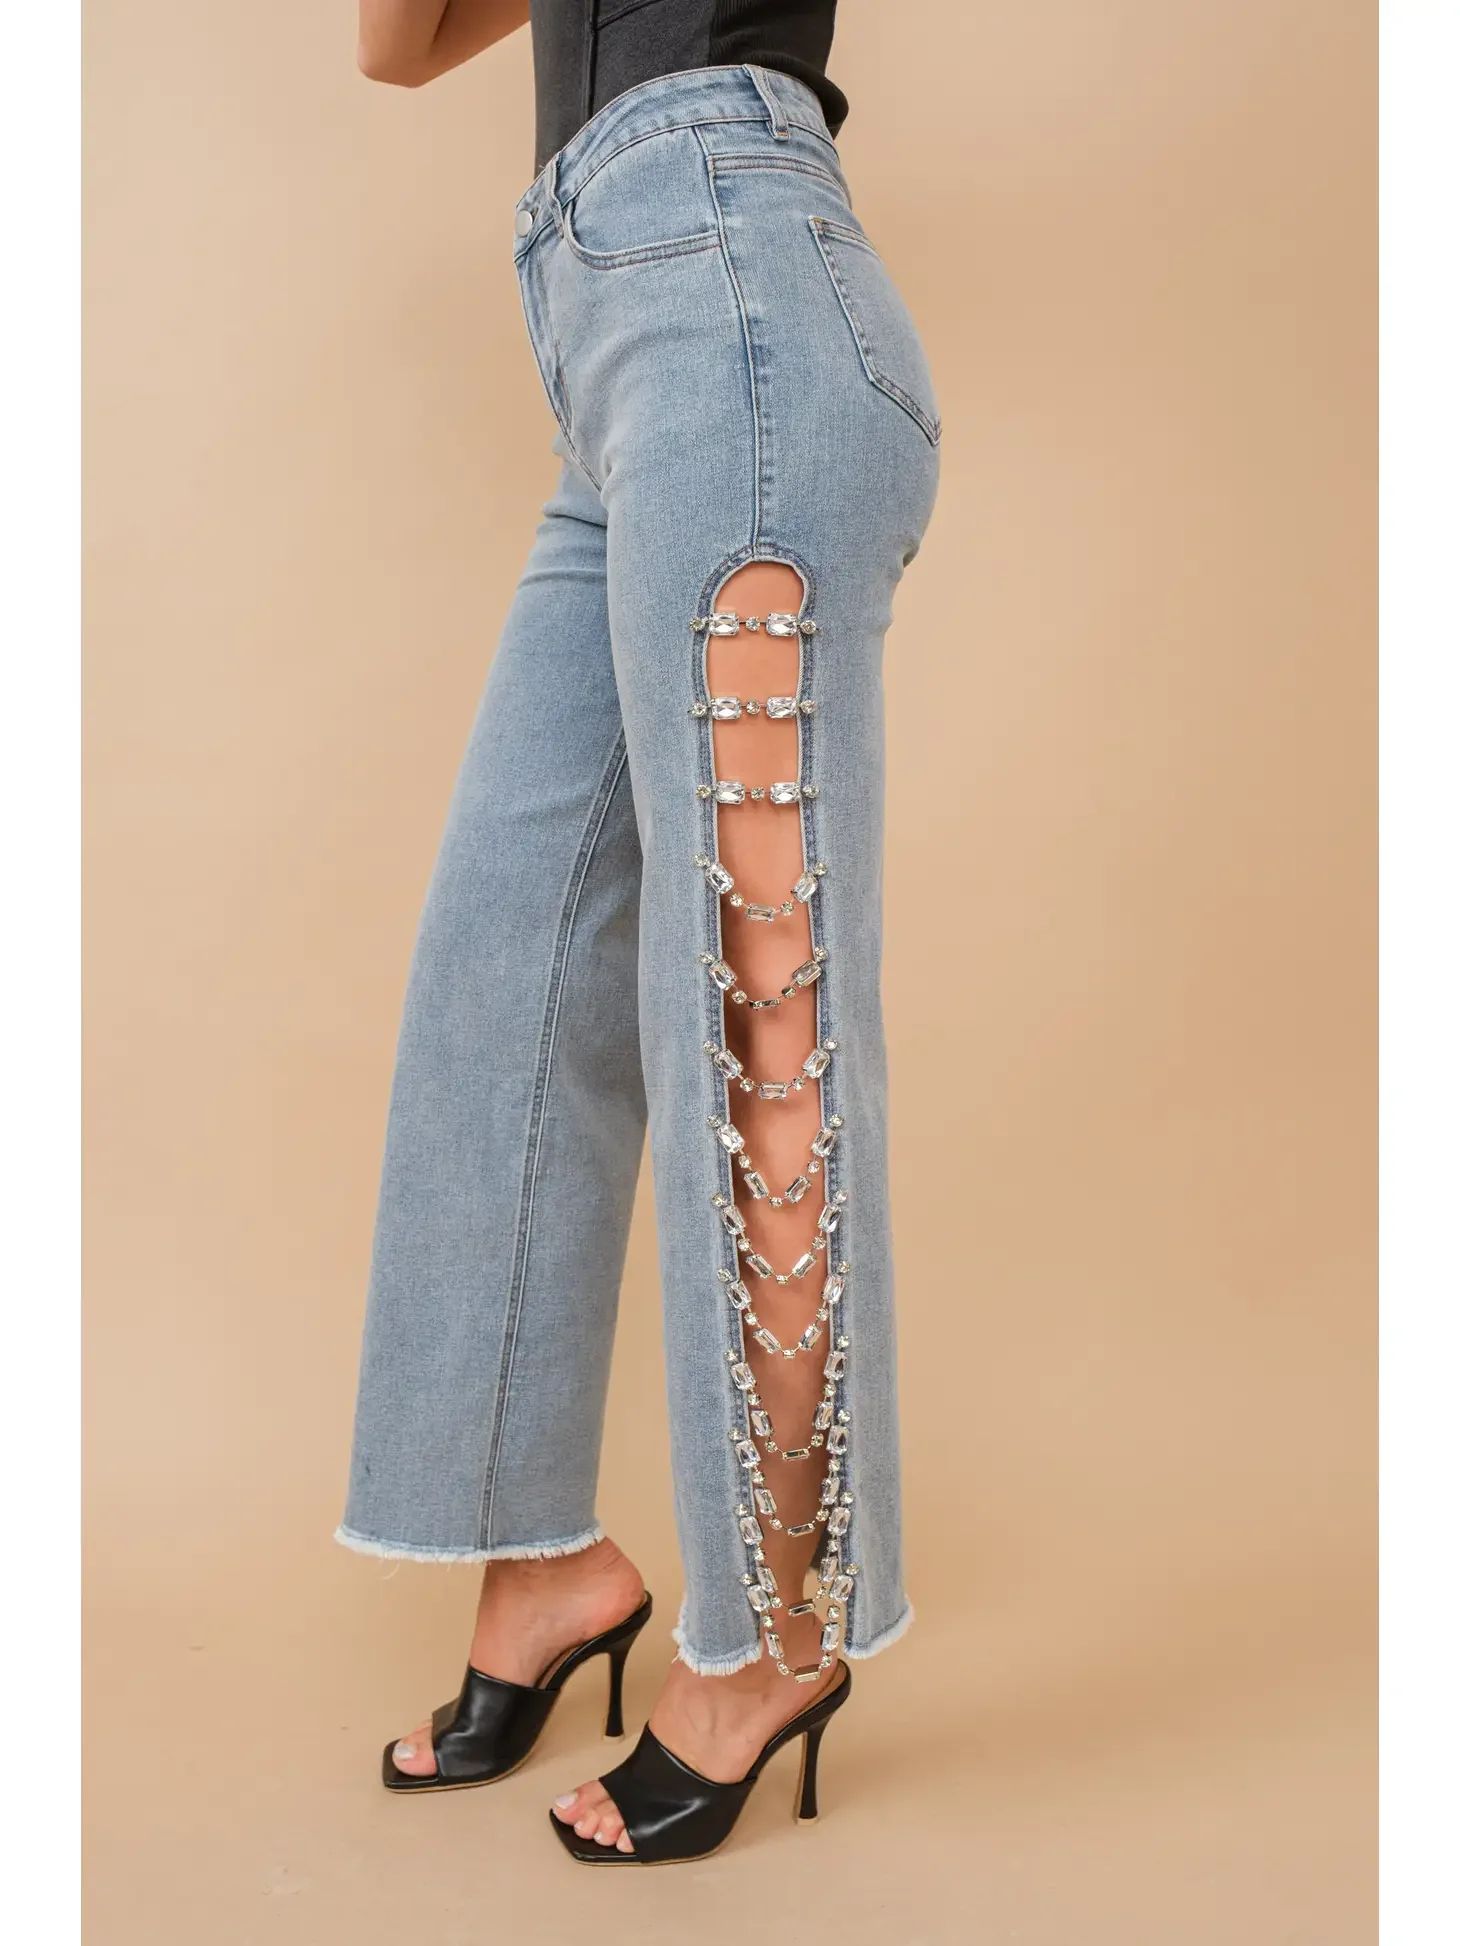 Jewel Denim Jeans | Love story boutique